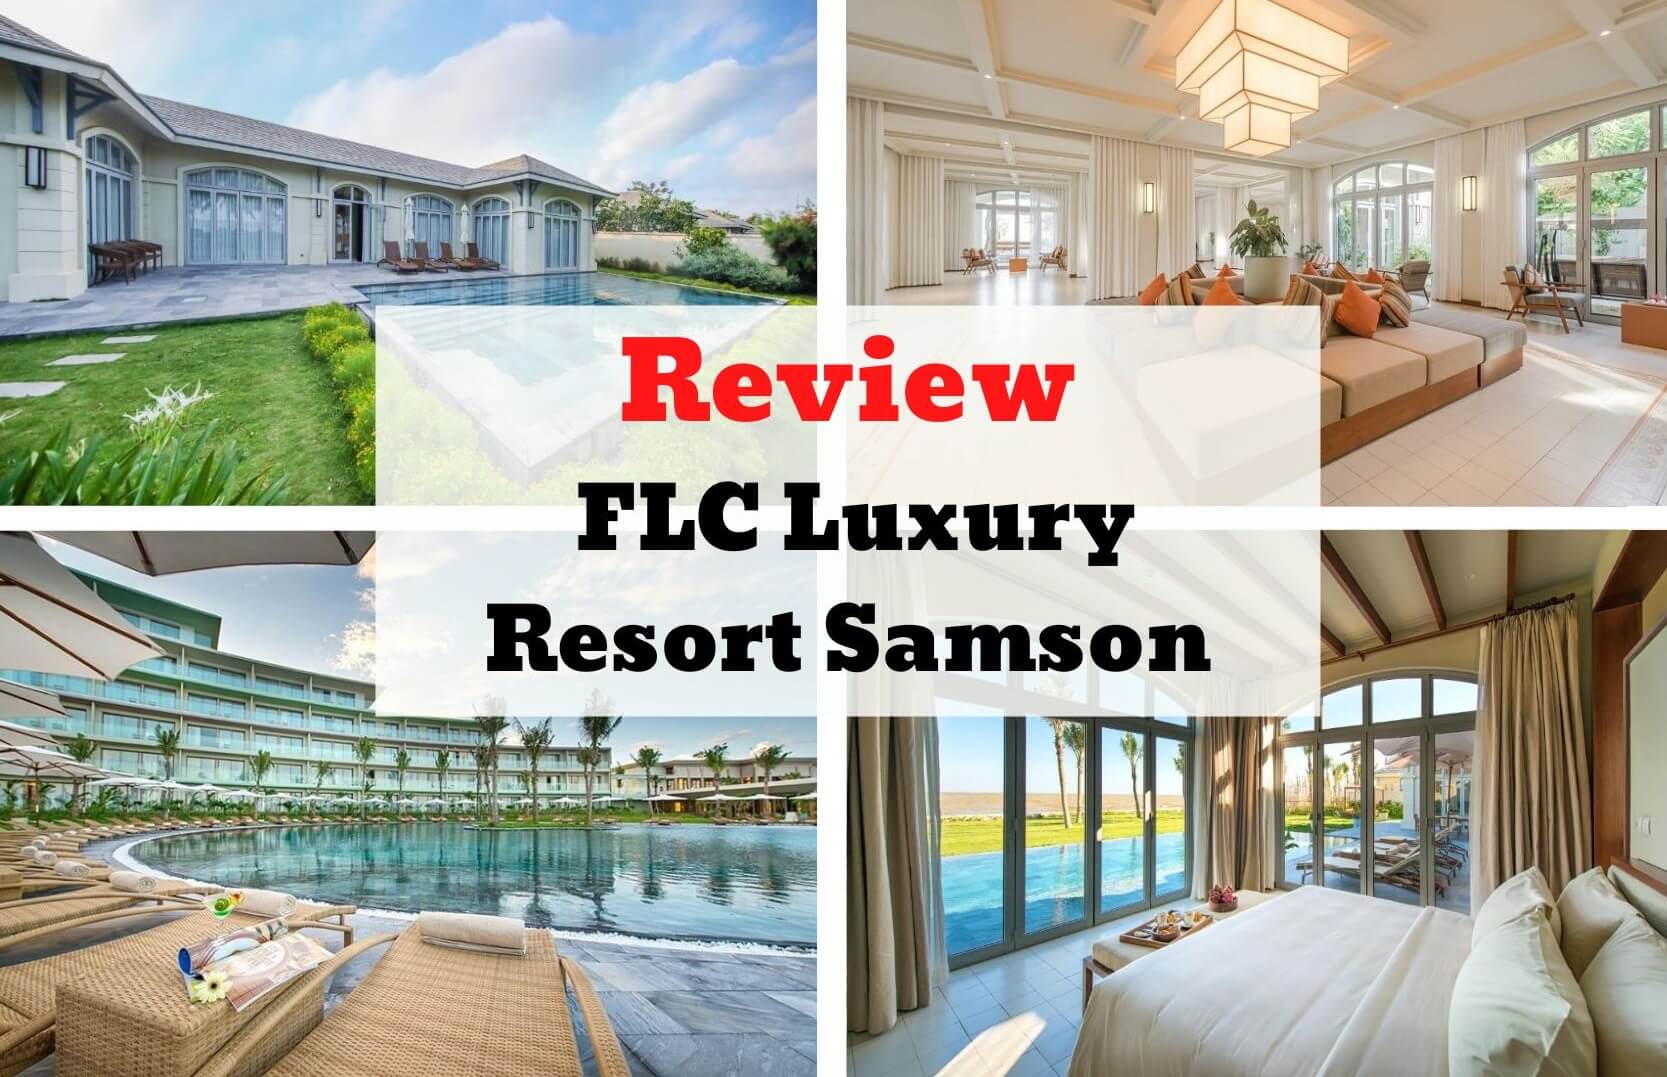 Review FLC Luxury Resort Samson - Nét đẹp hiện đại mang phong cách Á Đông